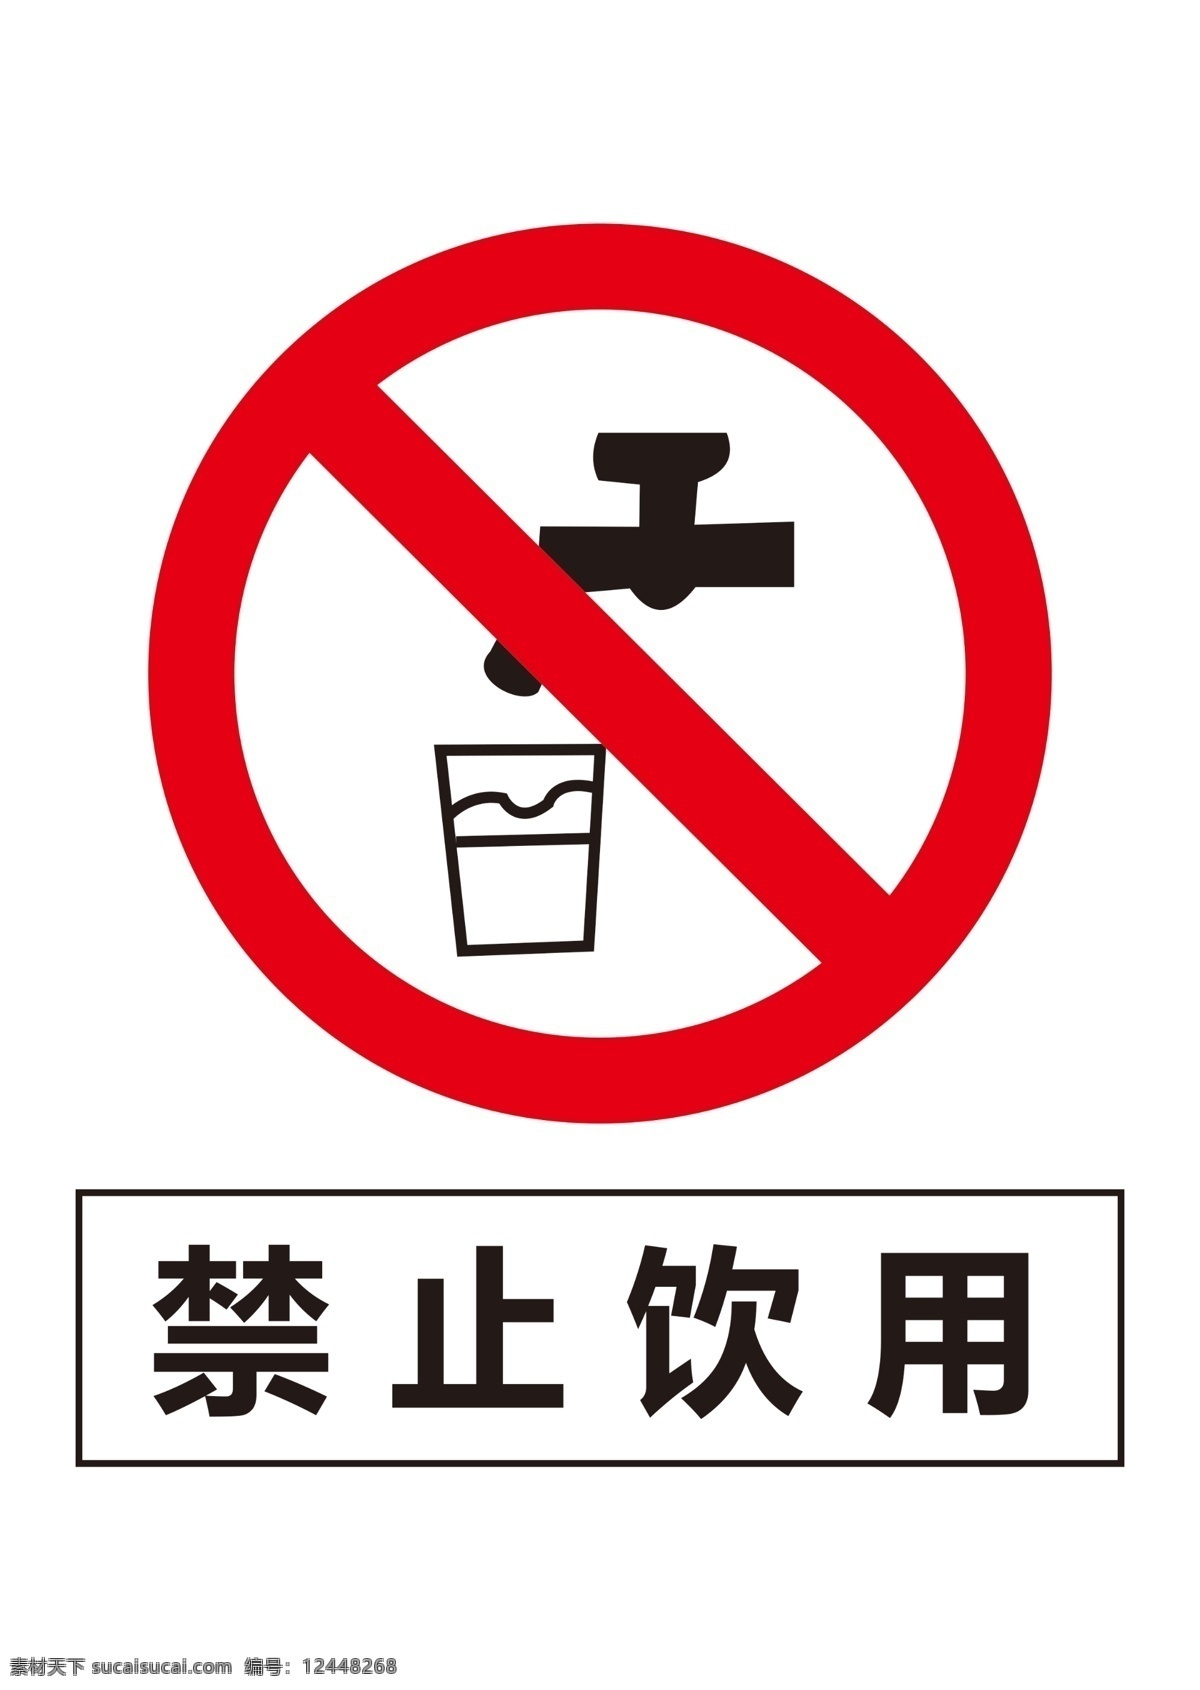 禁止饮用图片 禁止饮用 标识 标牌 矢量图形 300分辨率 分层